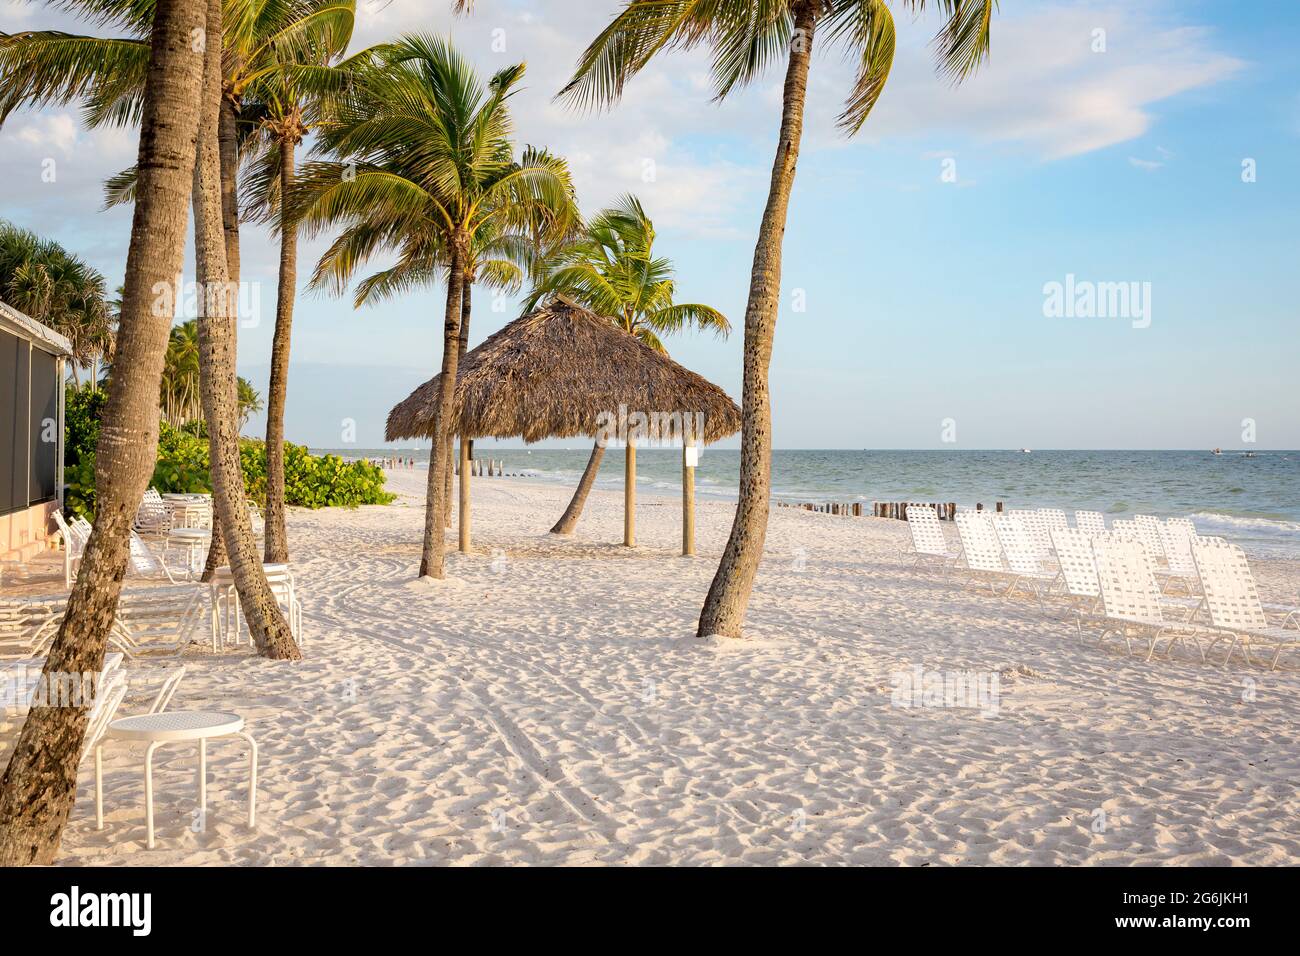 Sedie da spiaggia, capanna con tetto in erba e palme sulla spiaggia di Napoli, Florida, Stati Uniti Foto Stock